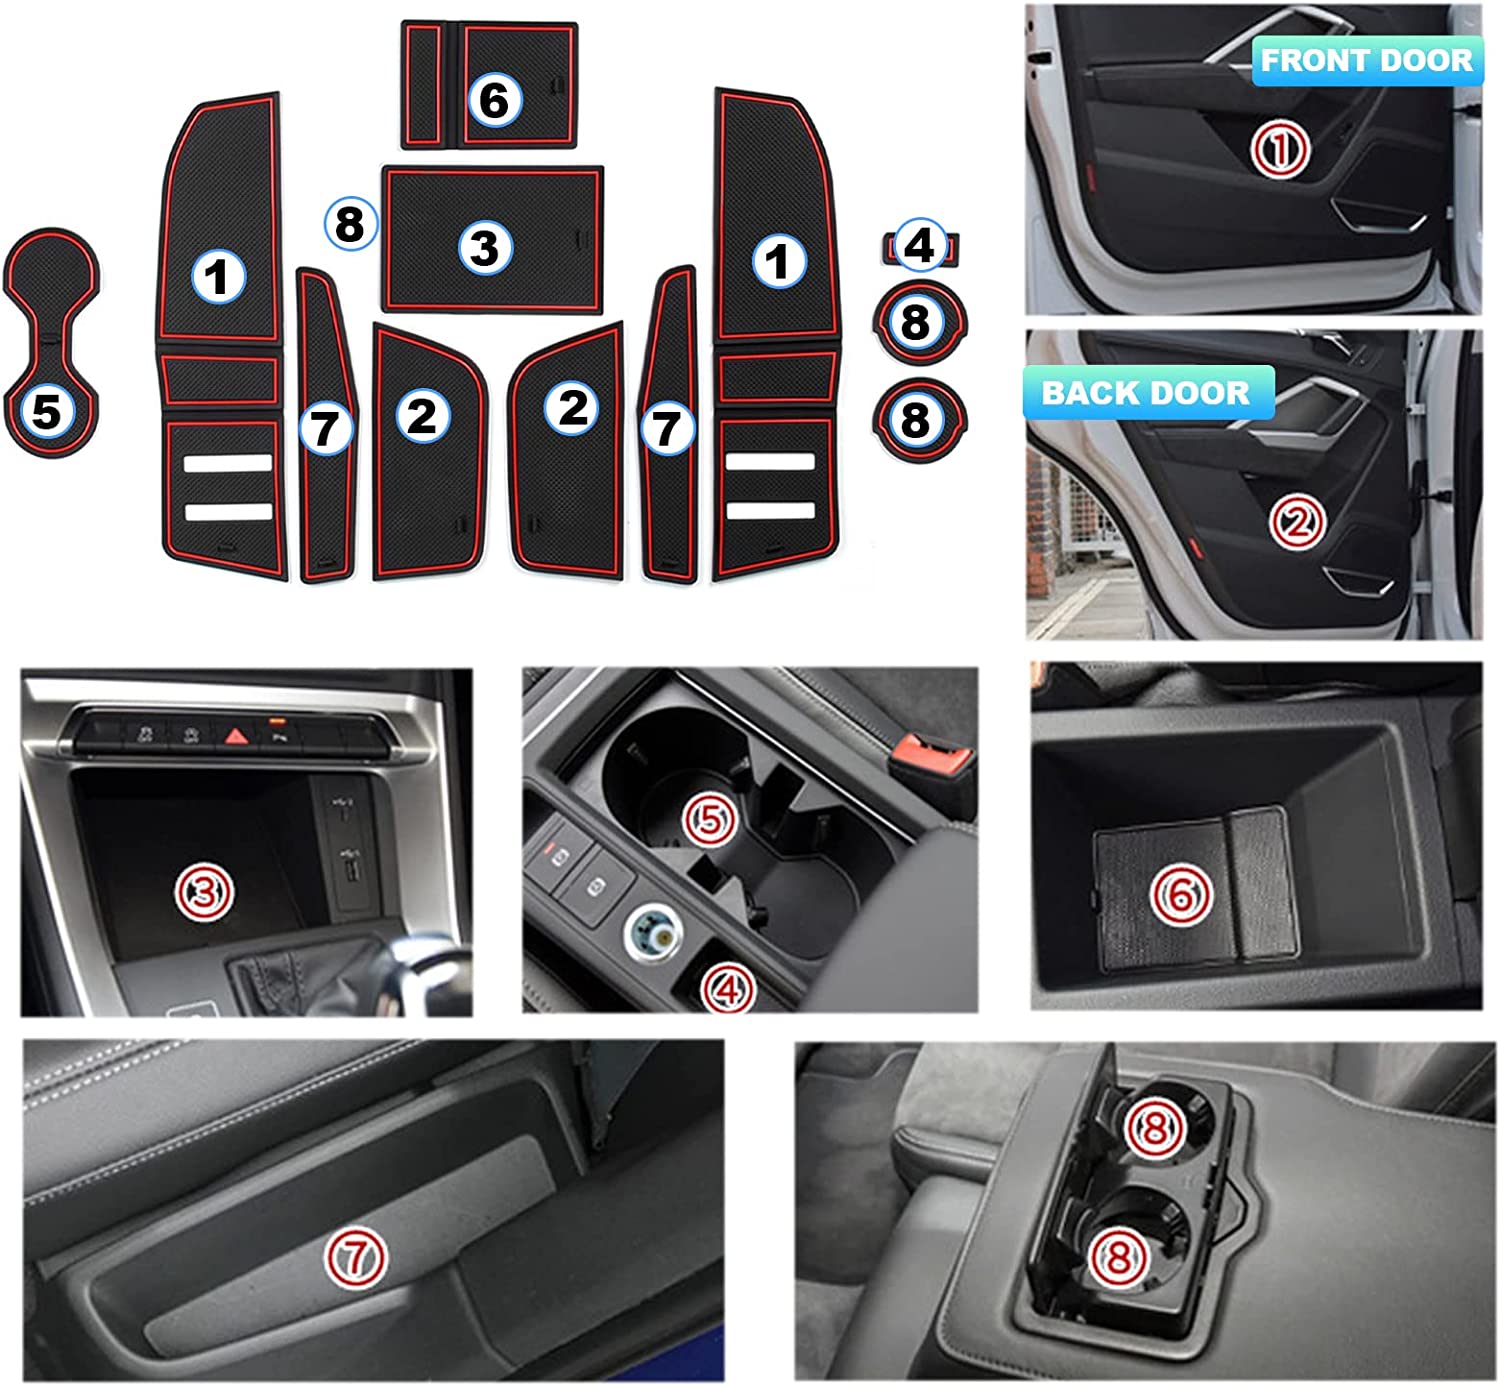 Audi Q3 F3 mk2 Door Slot Mats 2019 2020 - LFOTPP Car Accessories